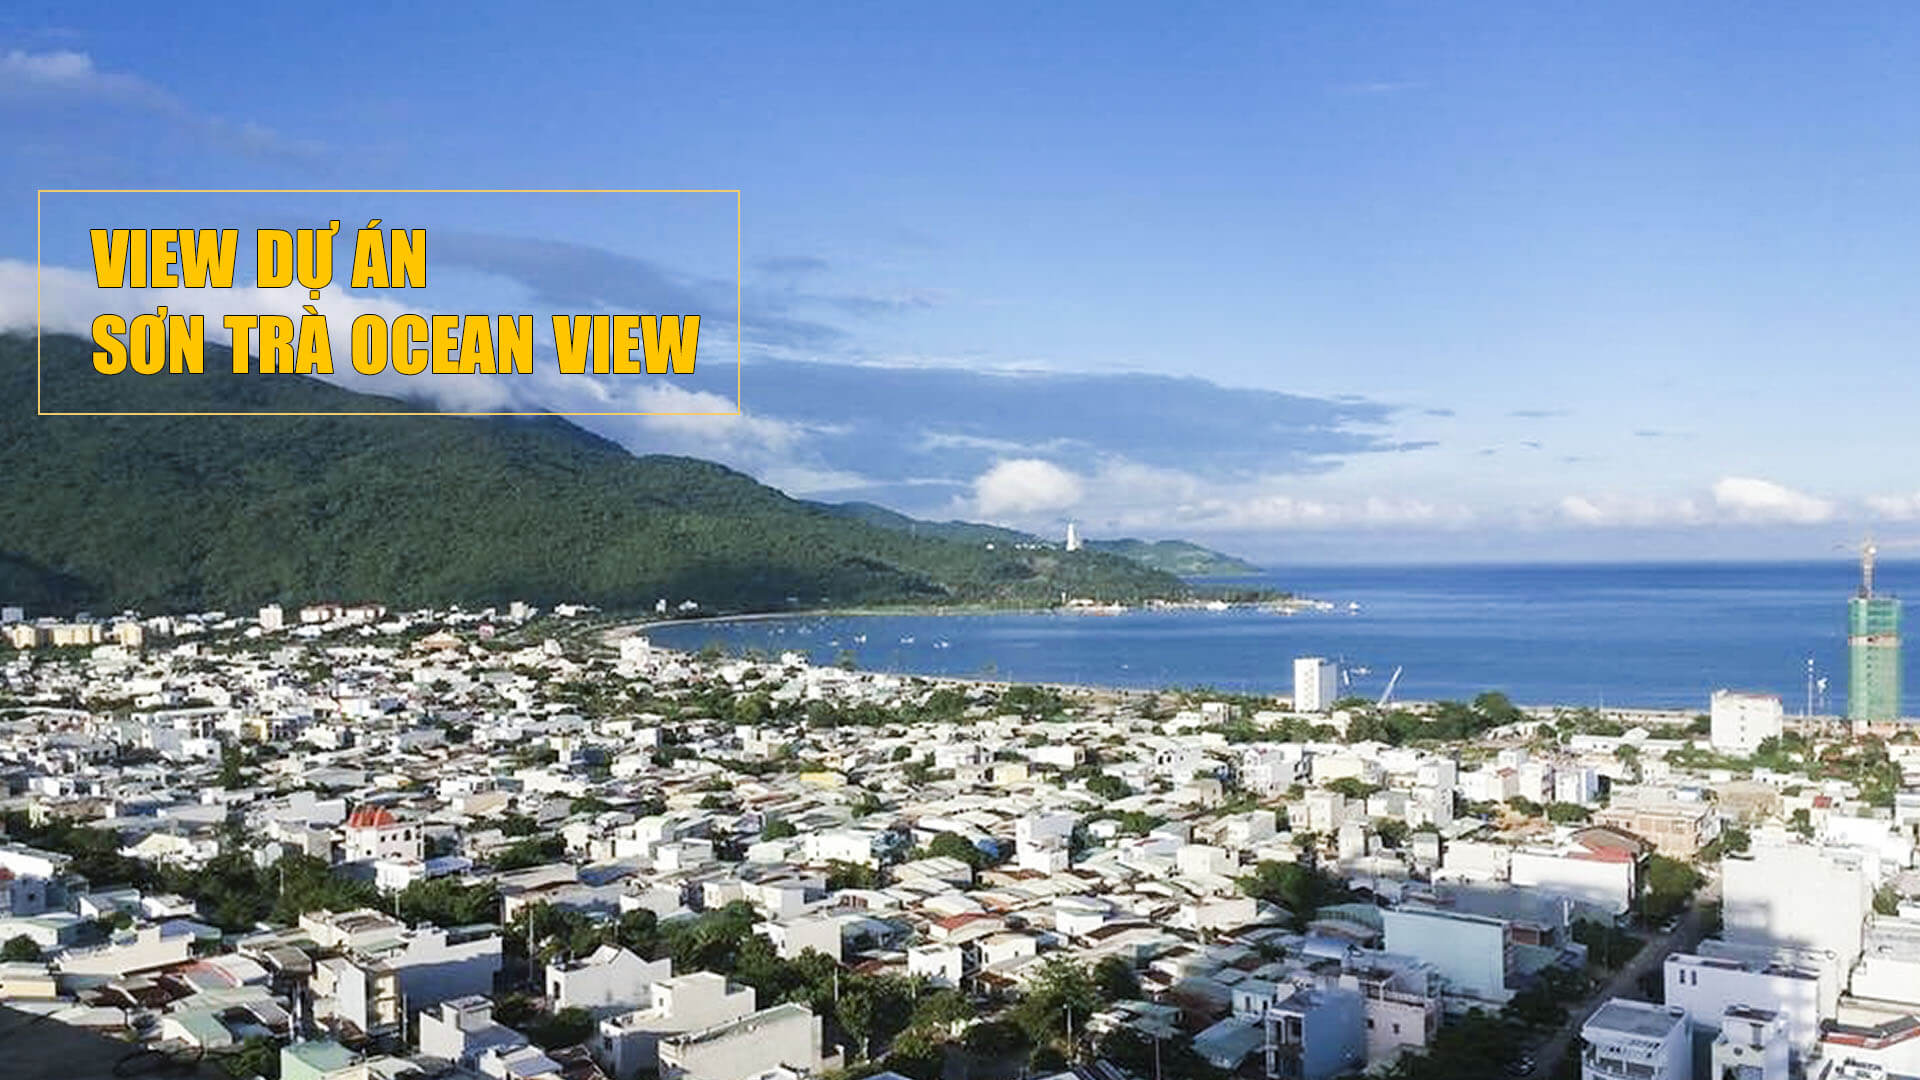 View nhìn bán đảo Sơn Trà từ dự án Sơn Trà Ocean View